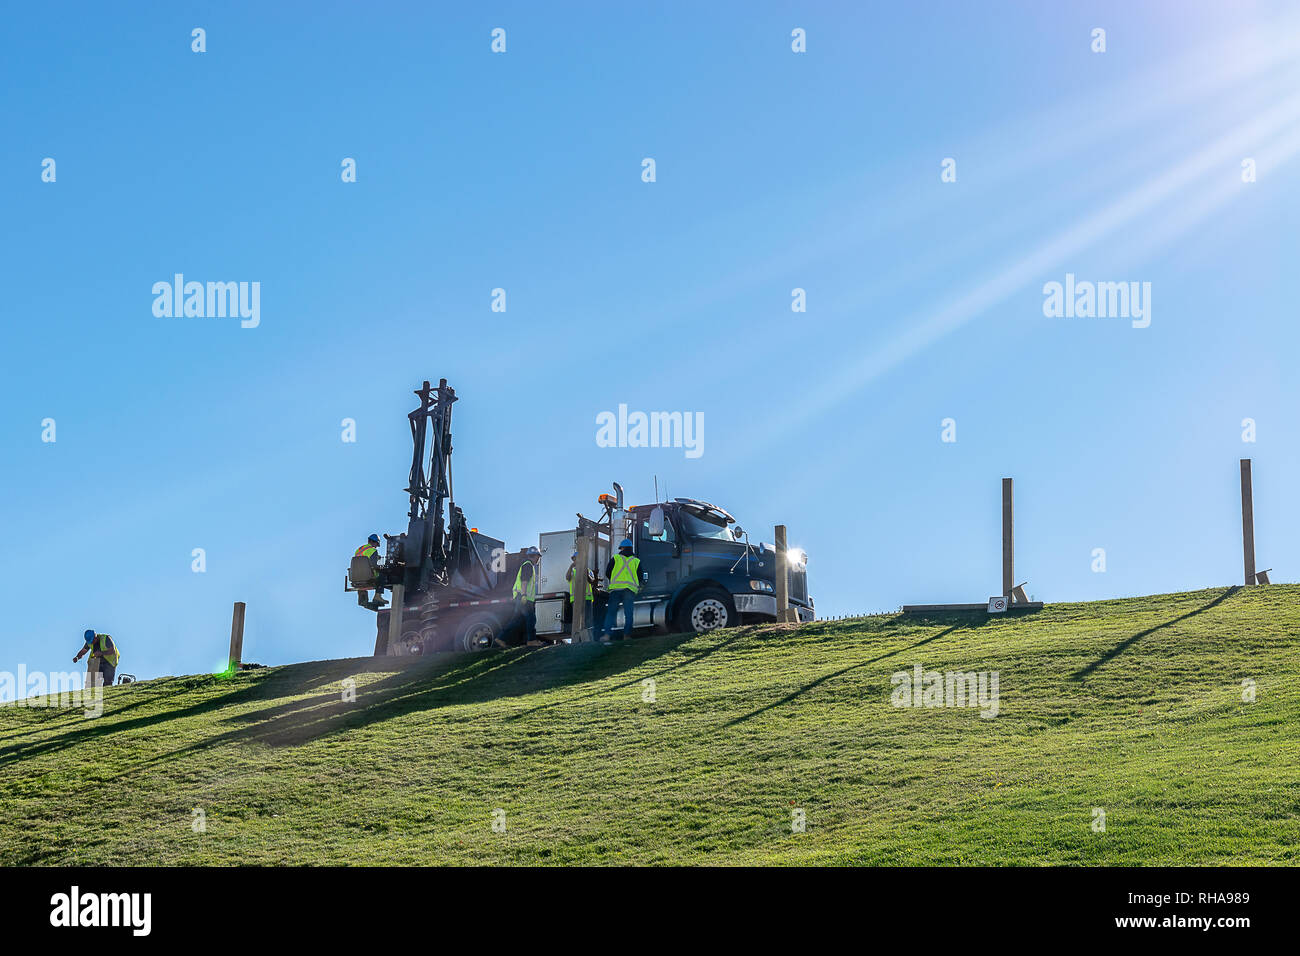 Kaukasische männlichen Ingenieure arbeiten und Bedienen eines hydraulischen Teleskop Stapler Schnecke Kran Bohrgerät auf einem Hügel, an einem sonnigen Tag montiert. Stockfoto